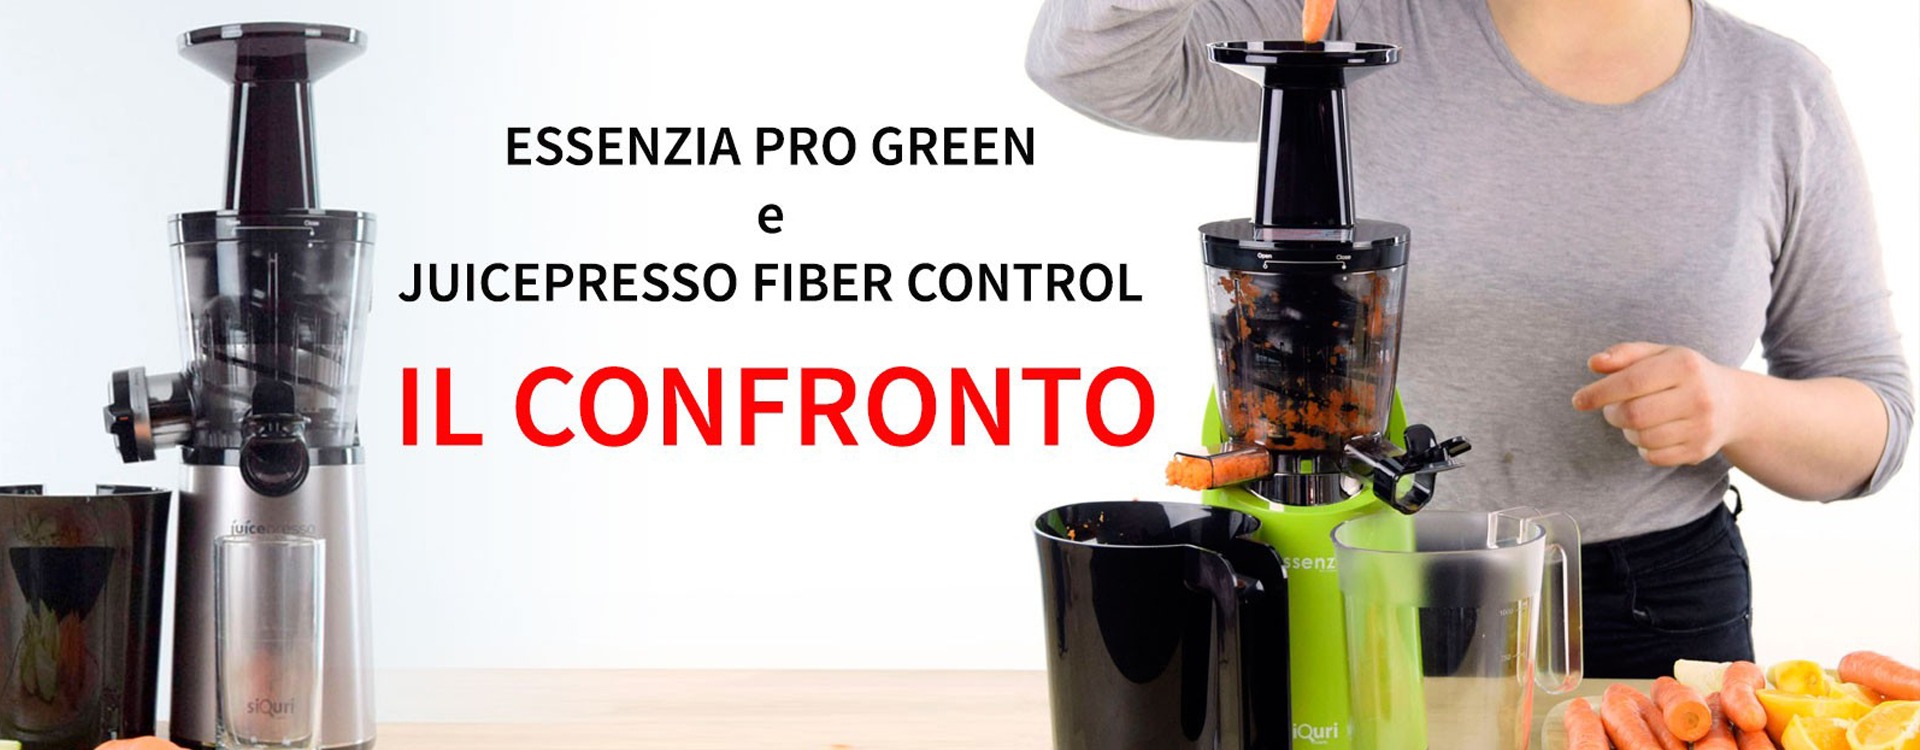 Essenzia pro green e juicepresso fiber control: il confronto tra estrattori di succo